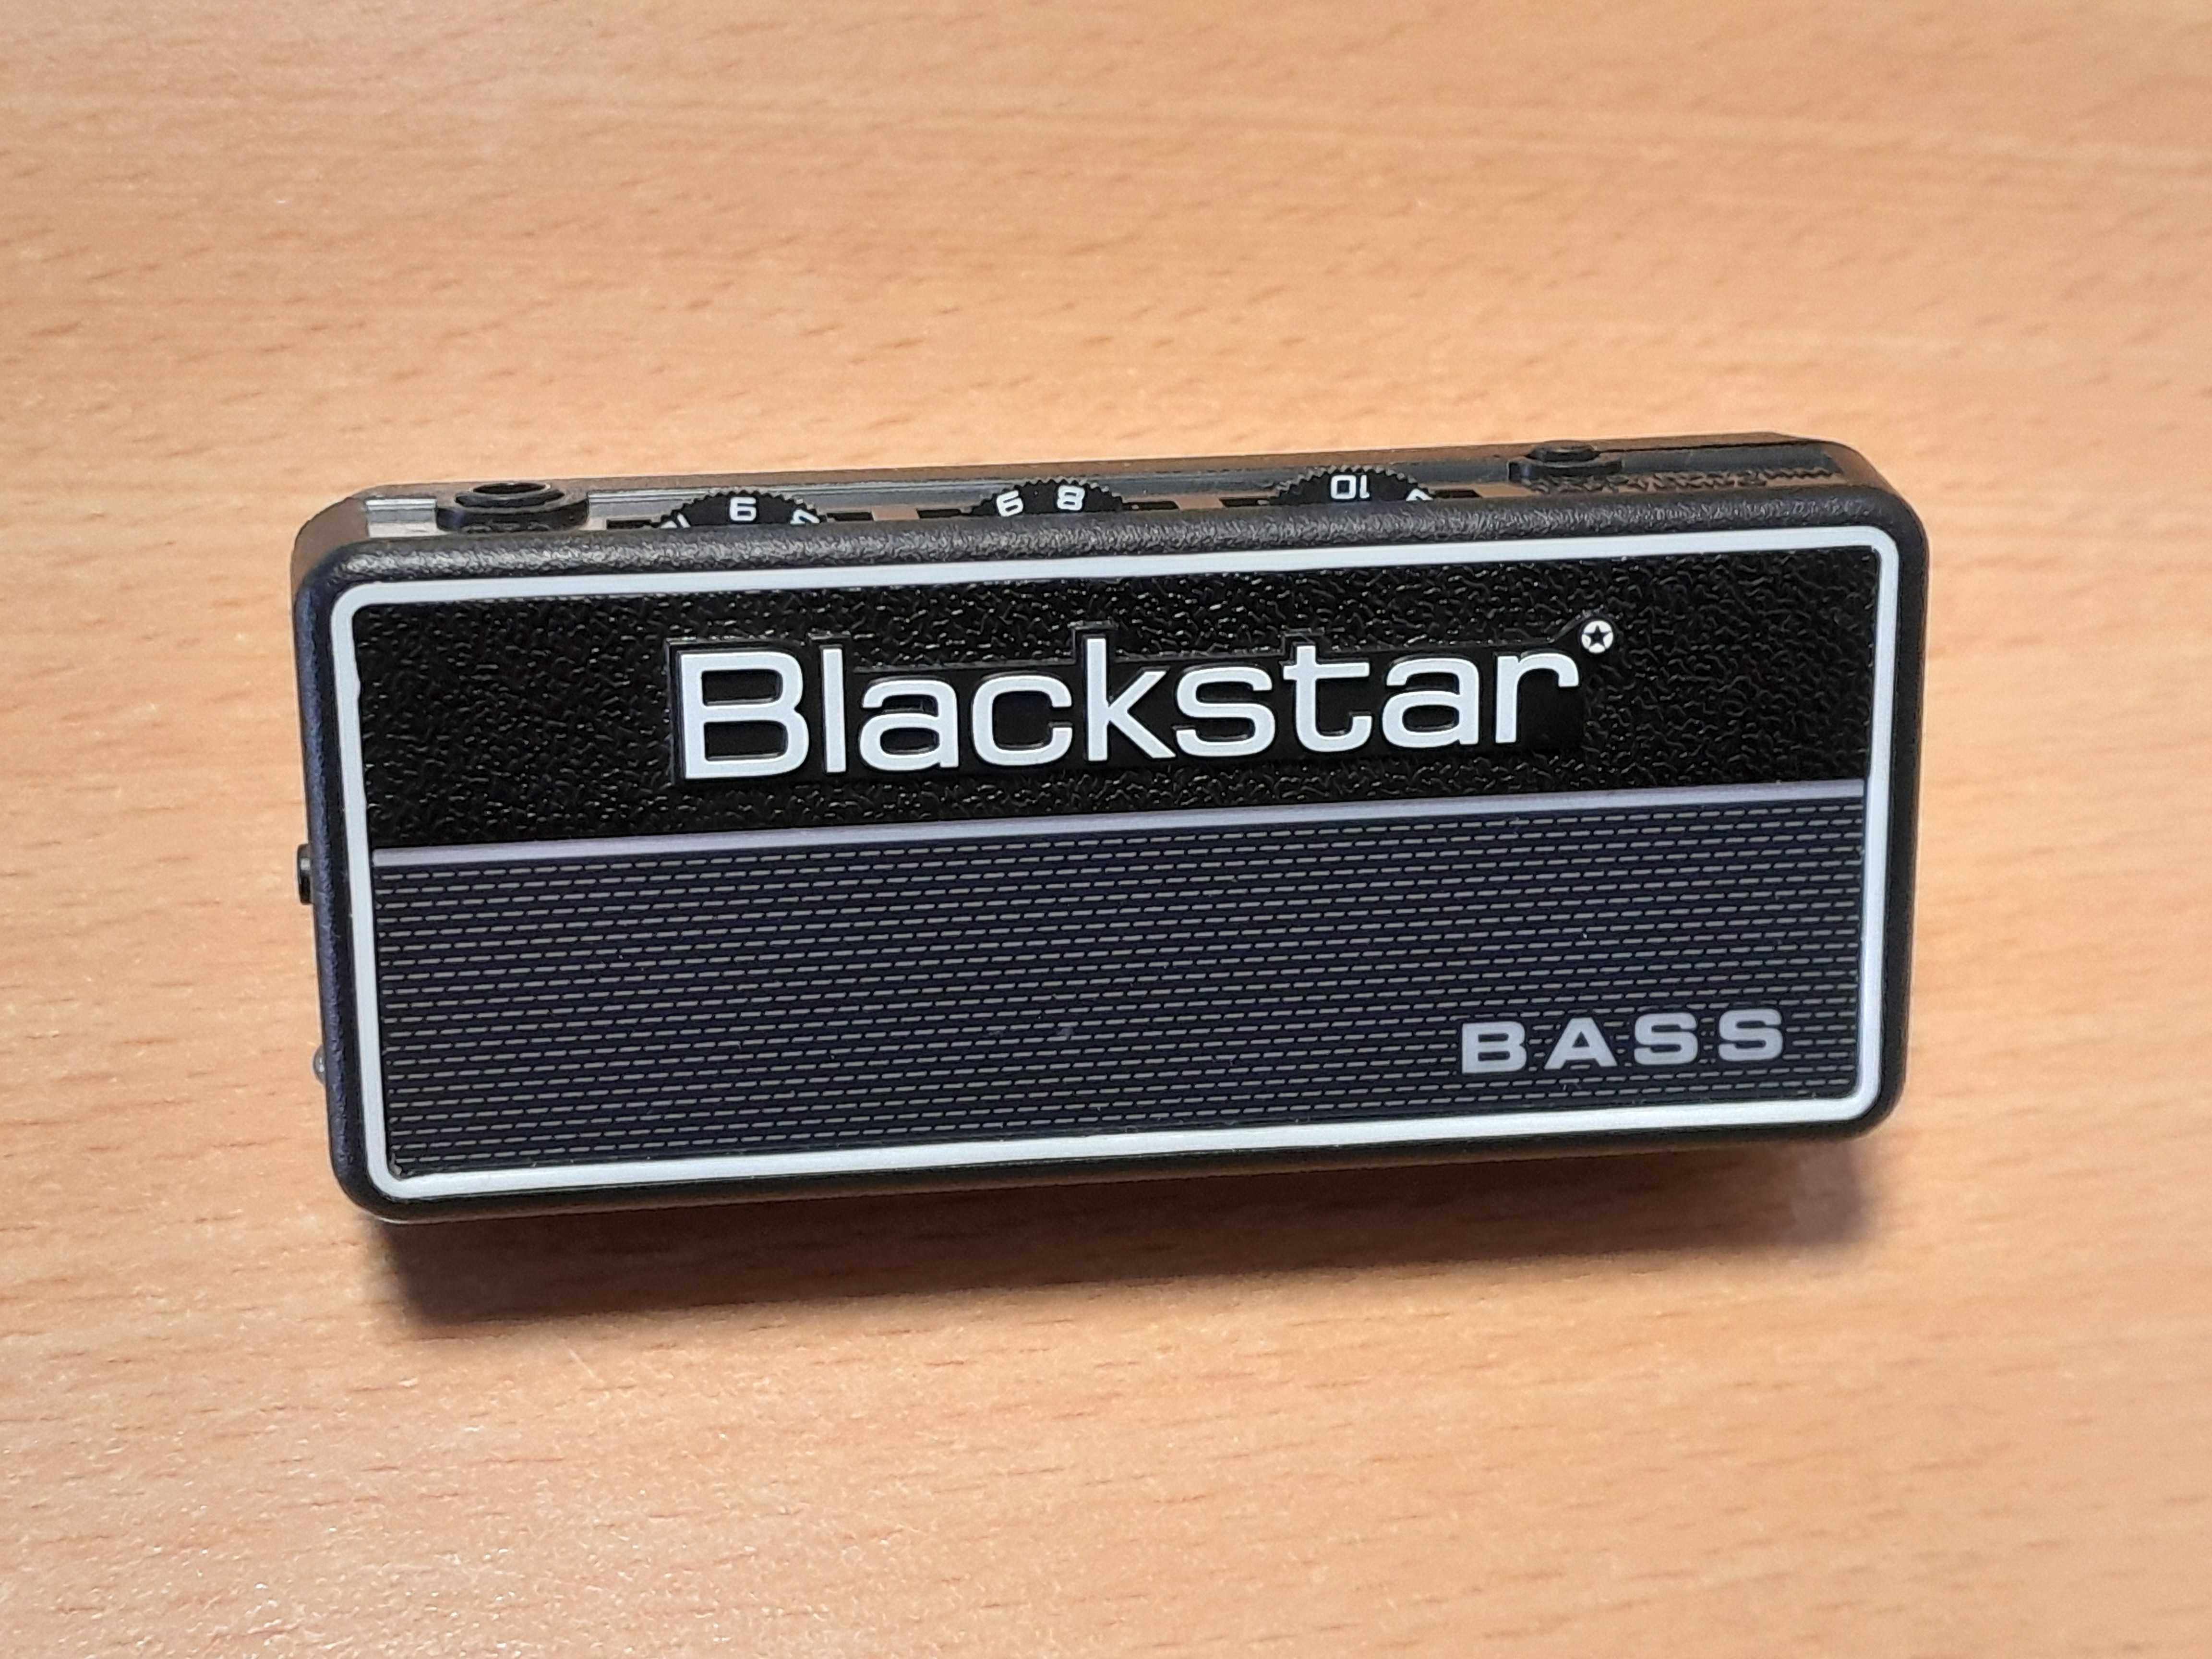 Blackstar bass wzmacniacz sluchawkowy.